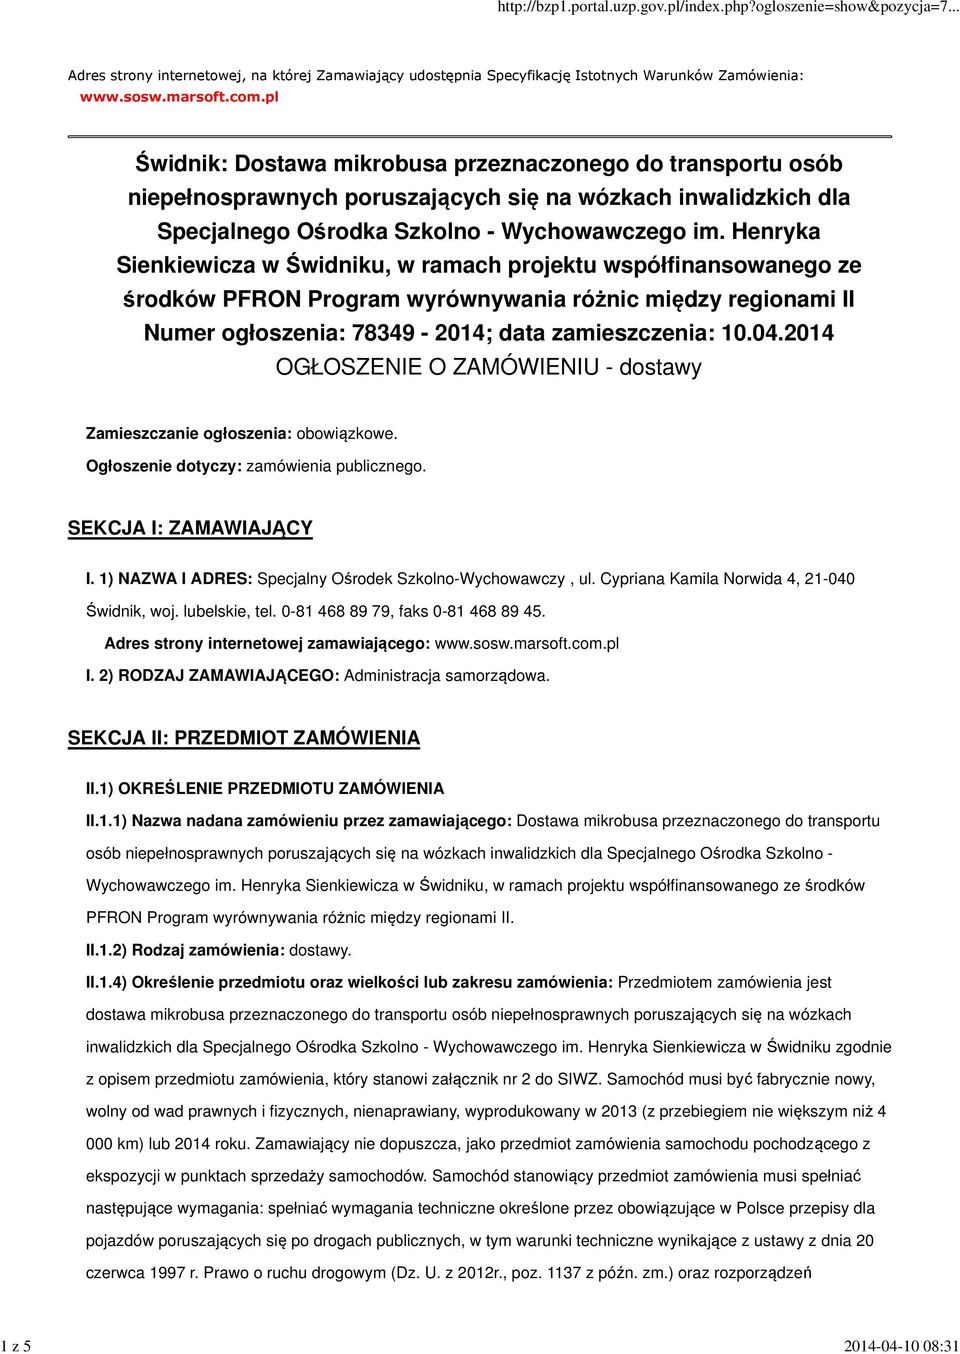 Henryka Sienkiewicza w Świdniku, w ramach projektu współfinansowanego ze środków PFRON Program wyrównywania różnic między regionami II Numer ogłoszenia: 78349-2014; data zamieszczenia: 10.04.